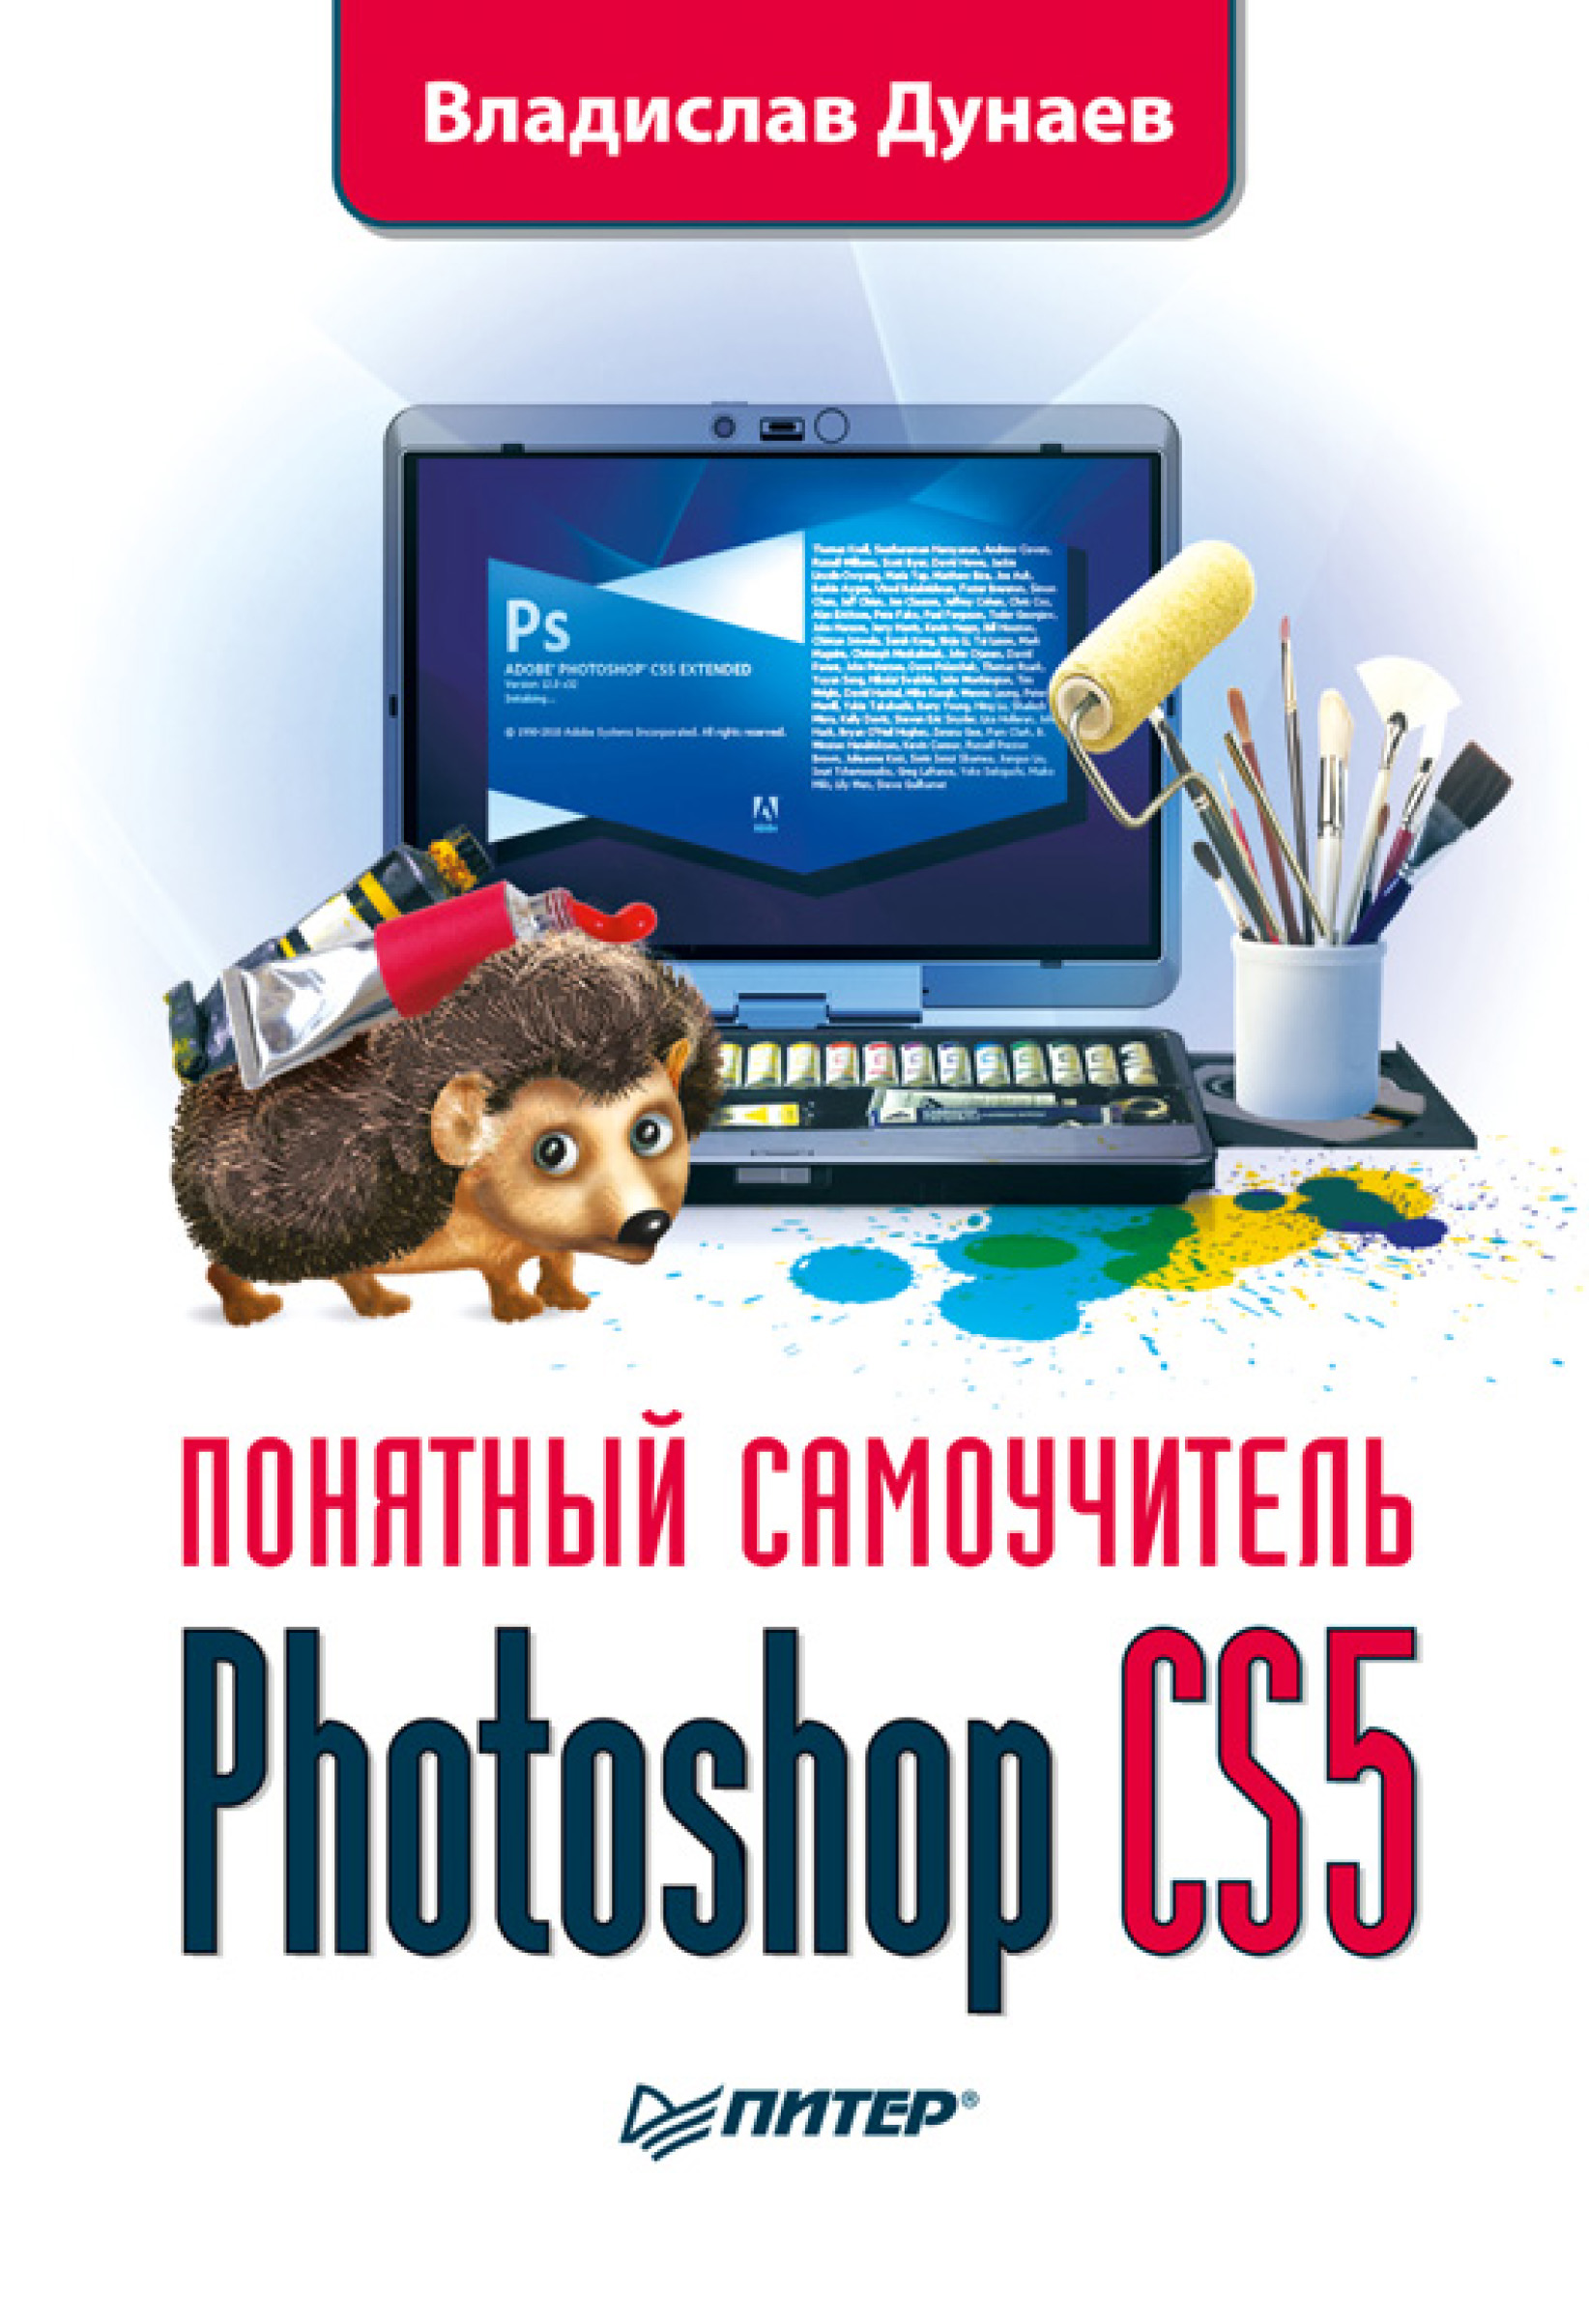 Книга Понятный самоучитель Photoshop CS5 созданная Владислав Дунаев может относится к жанру программы. Стоимость электронной книги Photoshop CS5 с идентификатором 584745 составляет 59.00 руб.